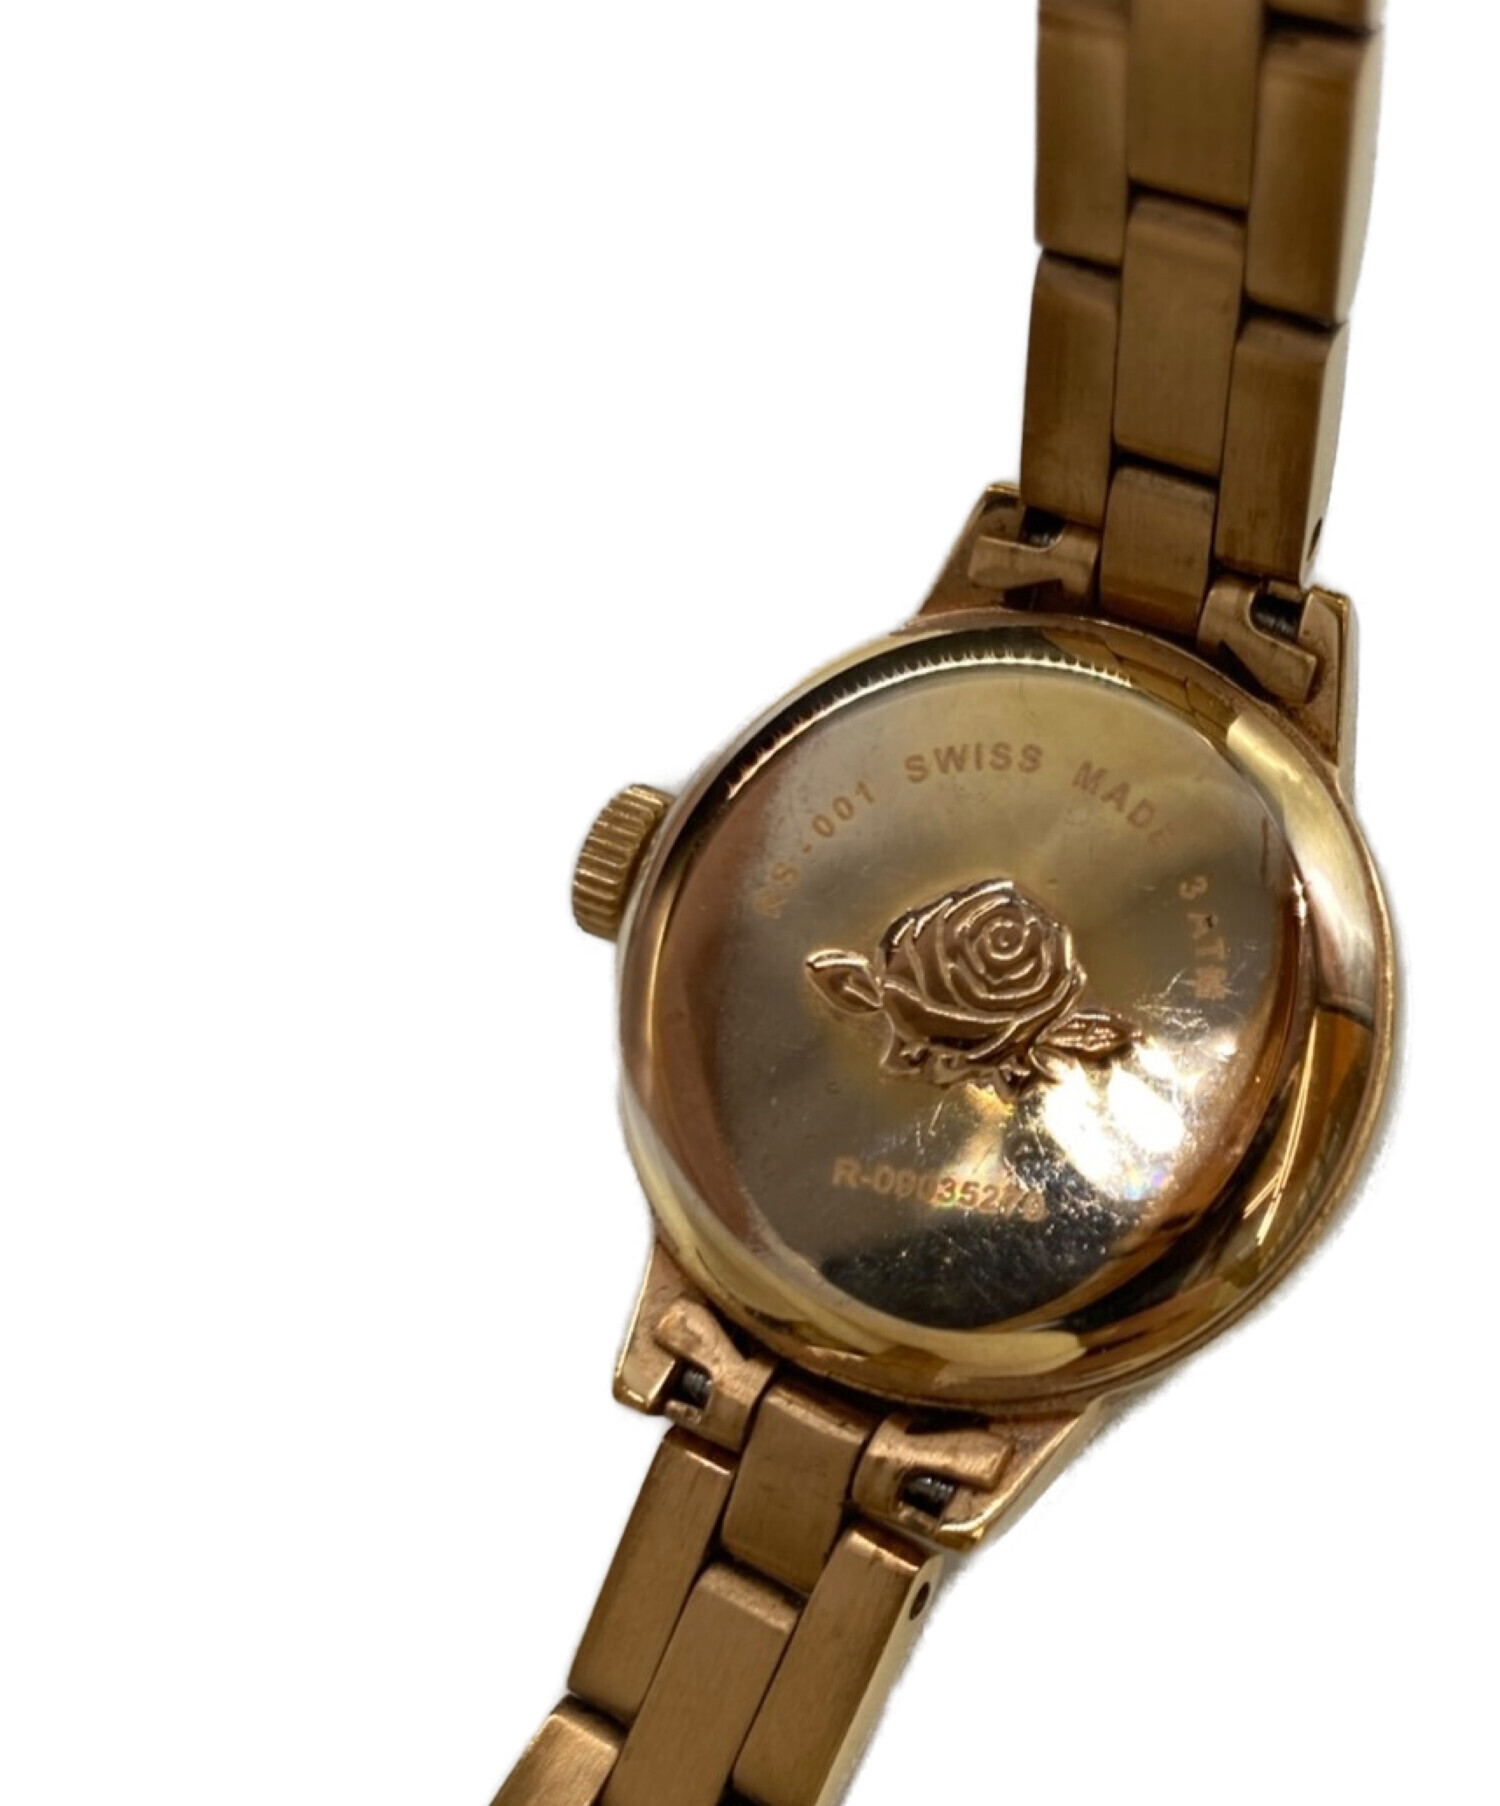 出品物一覧はこちらbyAC《人気》Rosemont 腕時計 ゴールド ヴィンテージ レディース レザー f